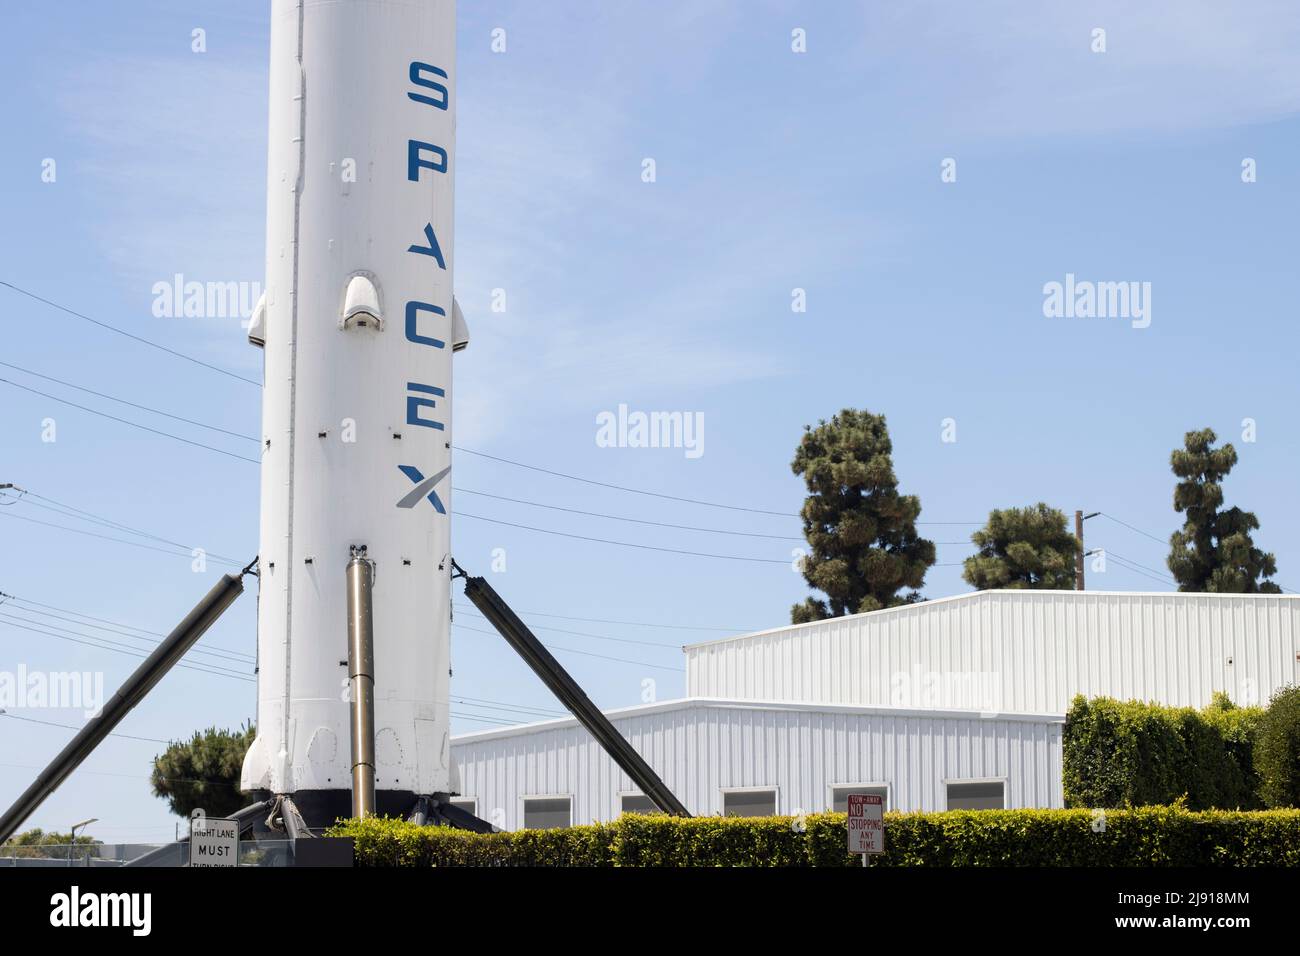 Primo piano dell'icona Falcon-9 sullo storico razzo volato e recuperato Booster, una esposizione verticale permanente presso la sede di SpaceX a Hawthorne... Foto Stock